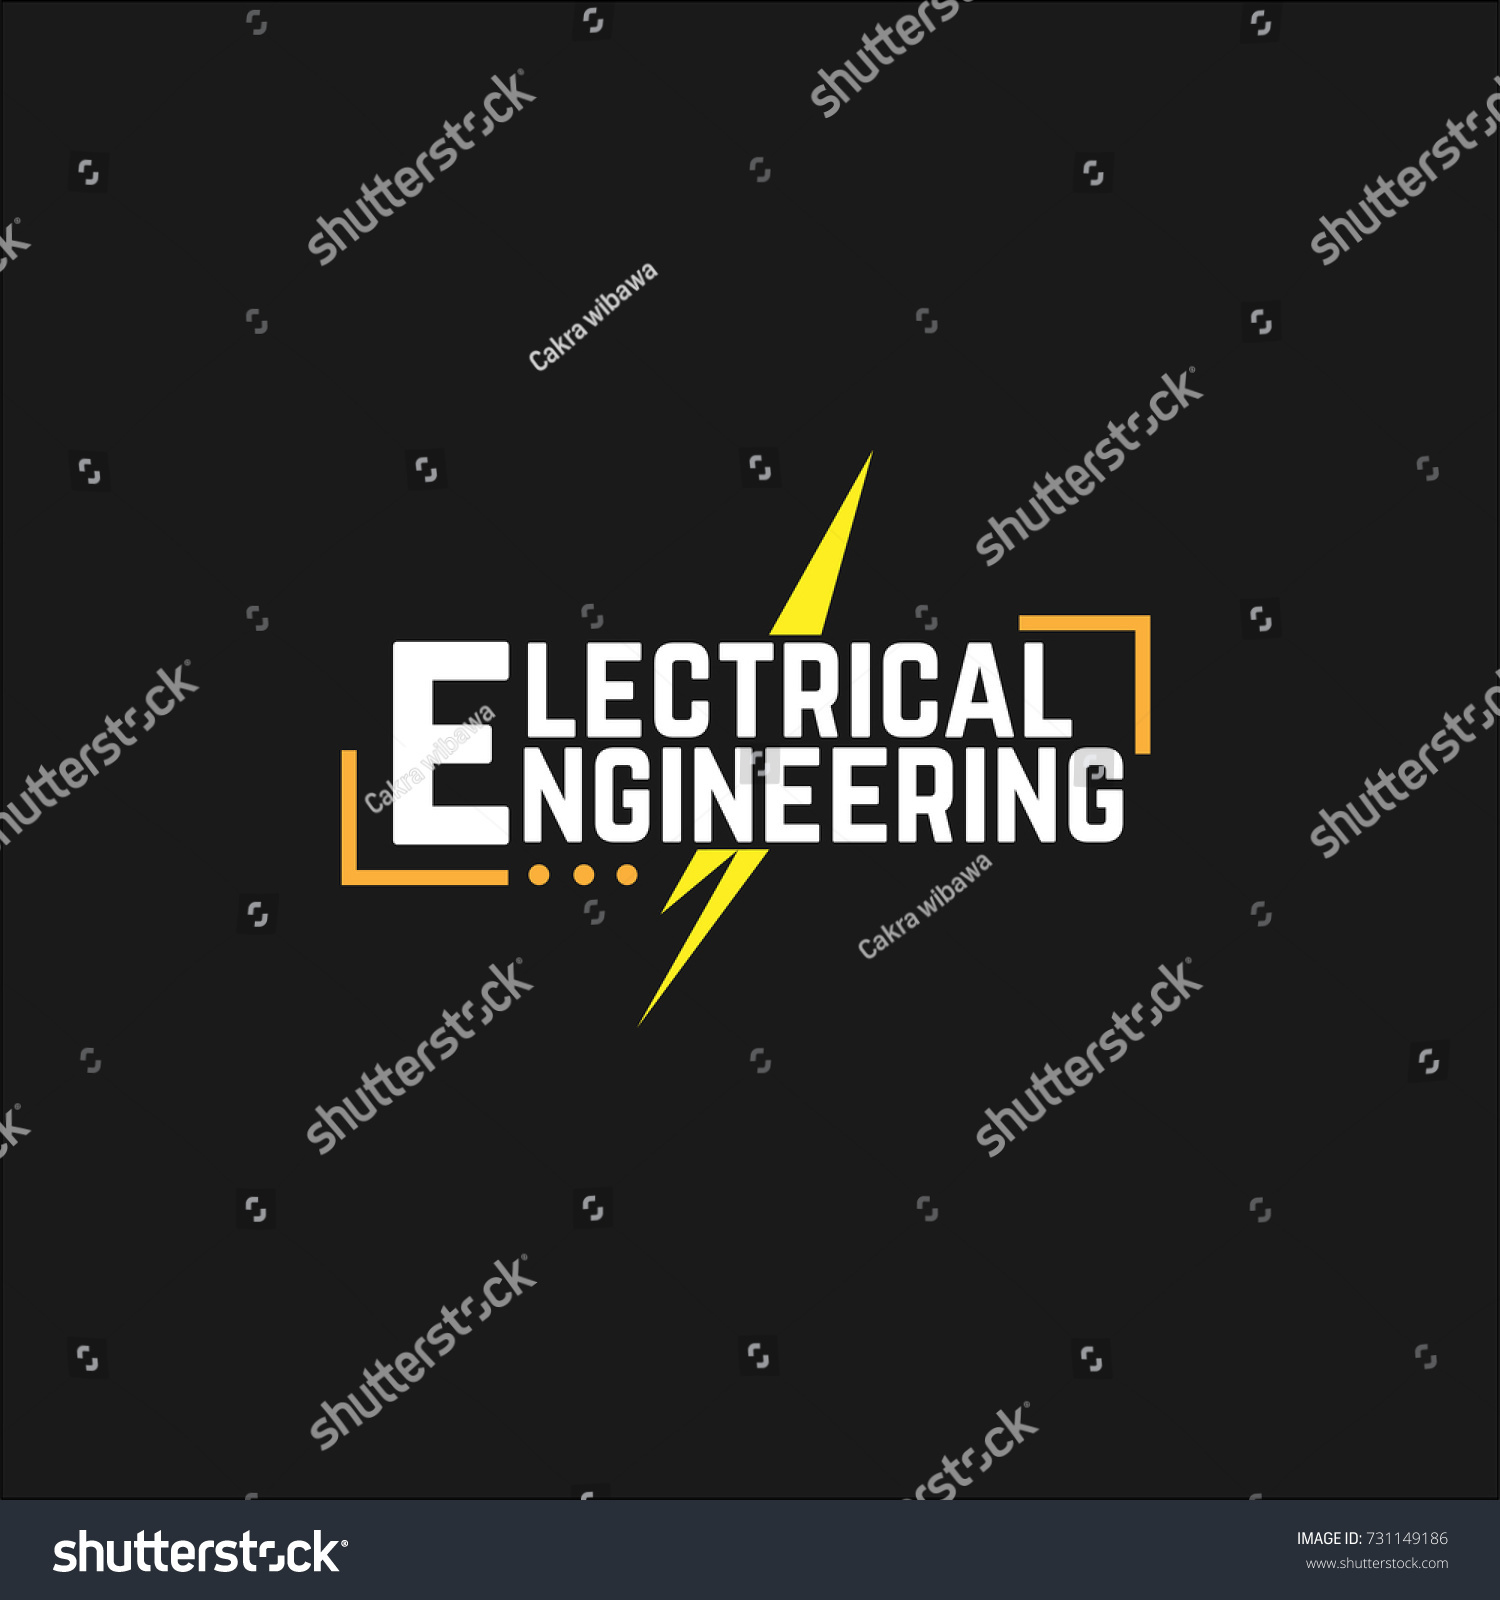 Gallery EN - Logo Design for Engineering Service Company